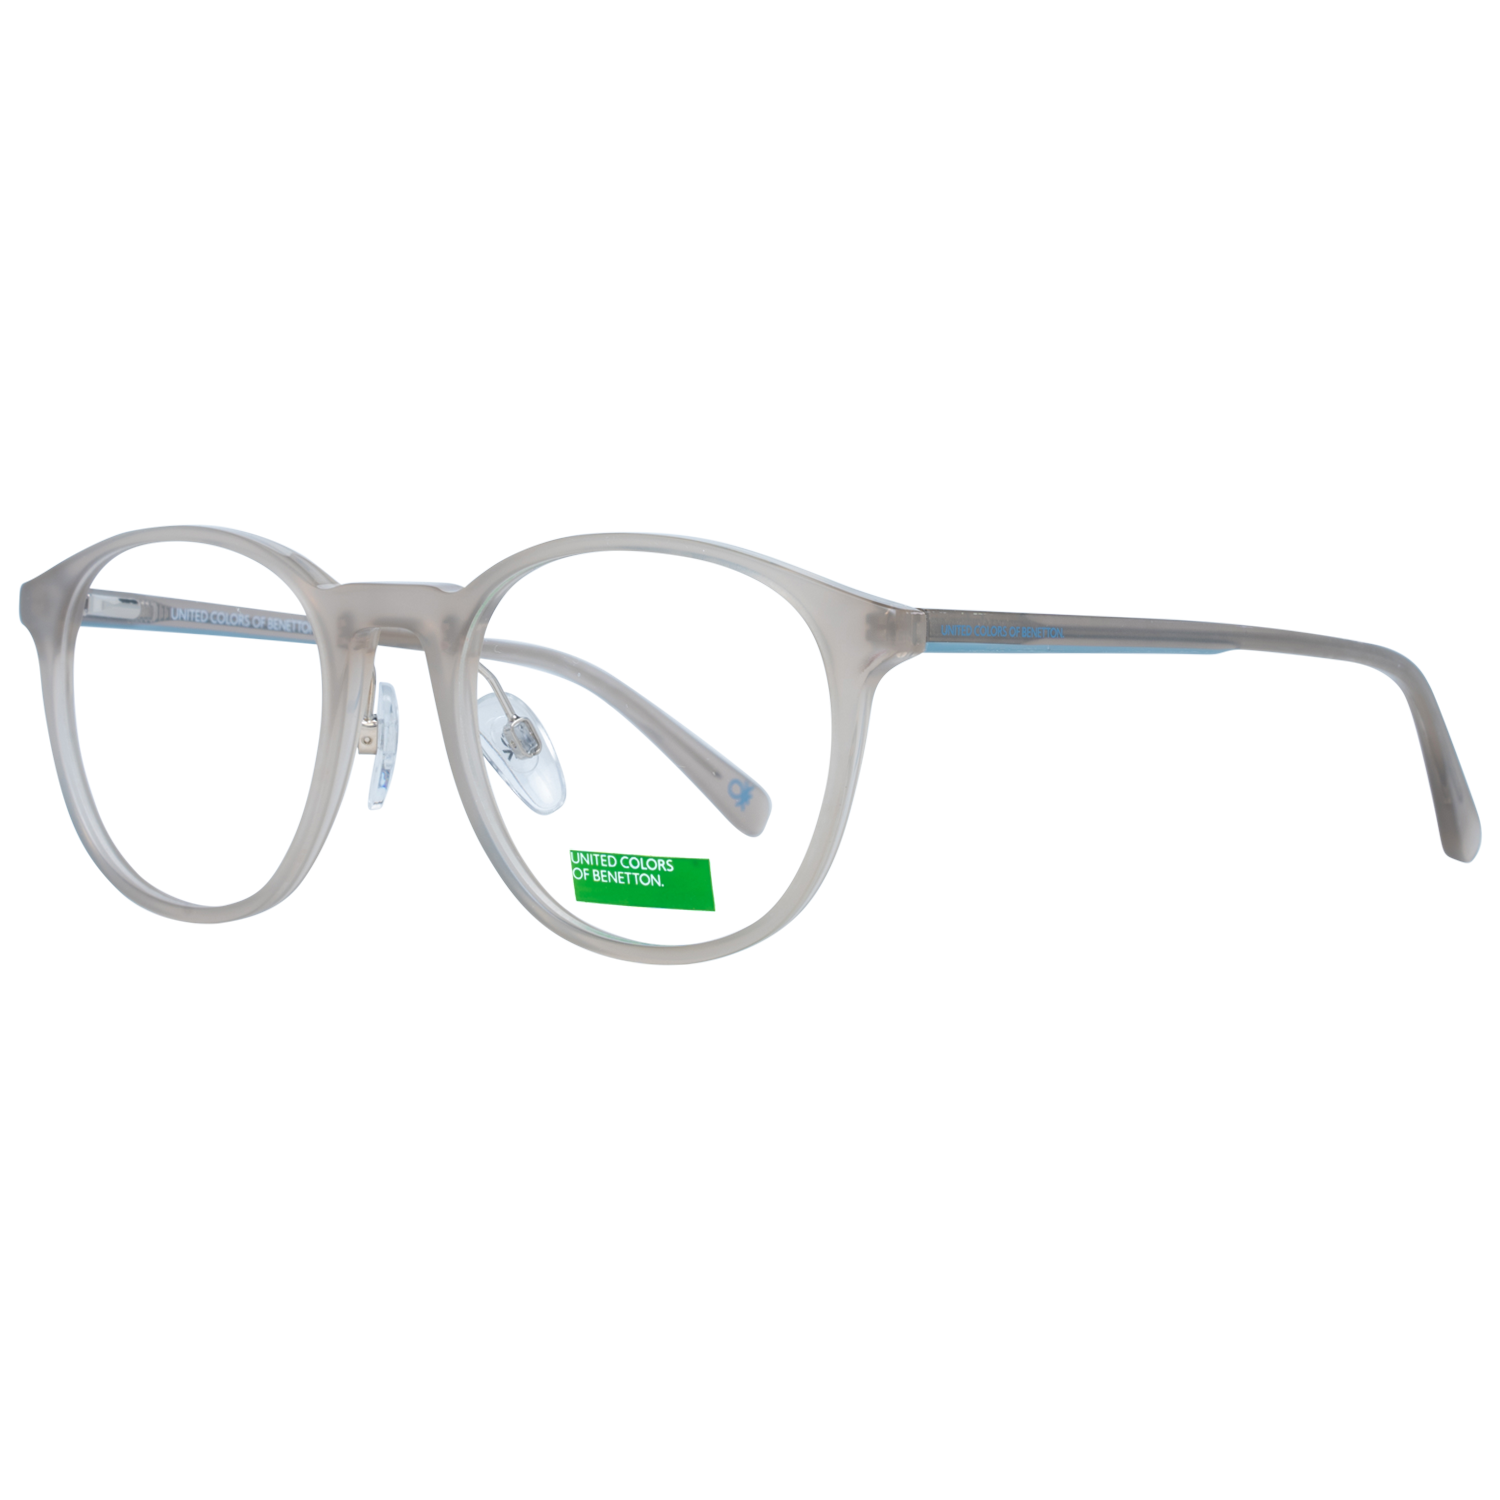 Benetton Frames Benetton Glasses Frames BEO1006 917 50 Eyeglasses Eyewear UK USA Australia 